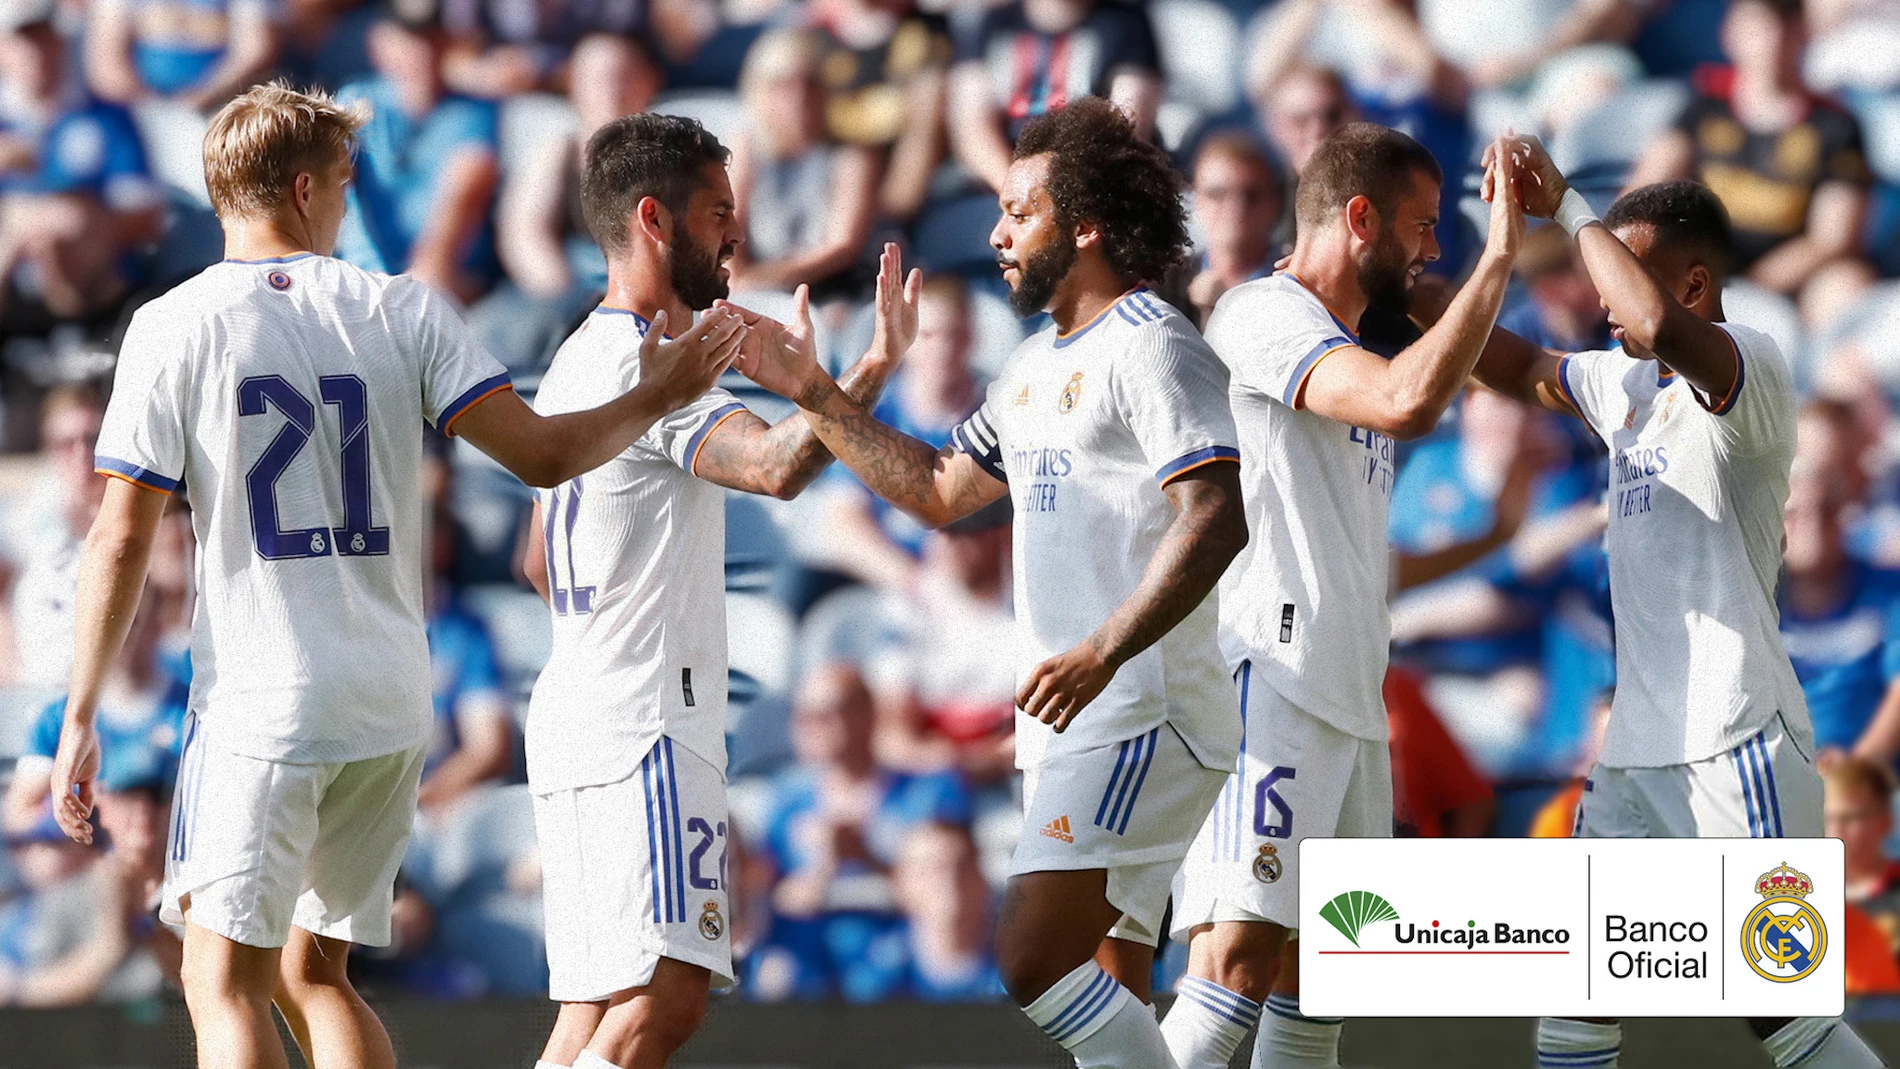 Unicaja es la entidad financiera oficial del Real Madrid